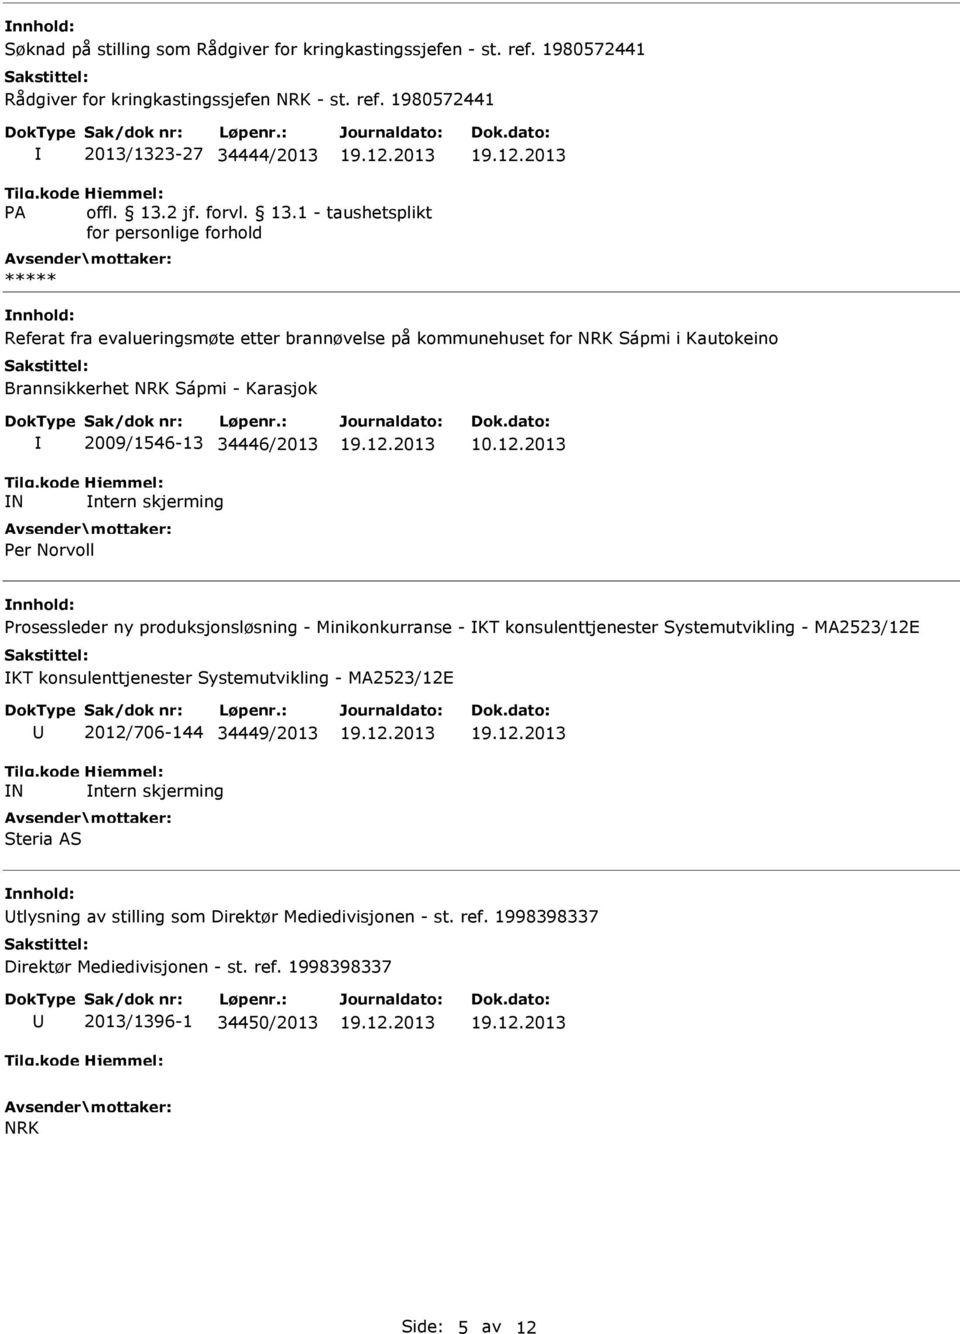 1980572441 2013/1323-27 34444/2013 Referat fra evalueringsmøte etter brannøvelse på kommunehuset for NRK Sápmi i Kautokeino Brannsikkerhet NRK Sápmi - Karasjok N 2009/1546-13